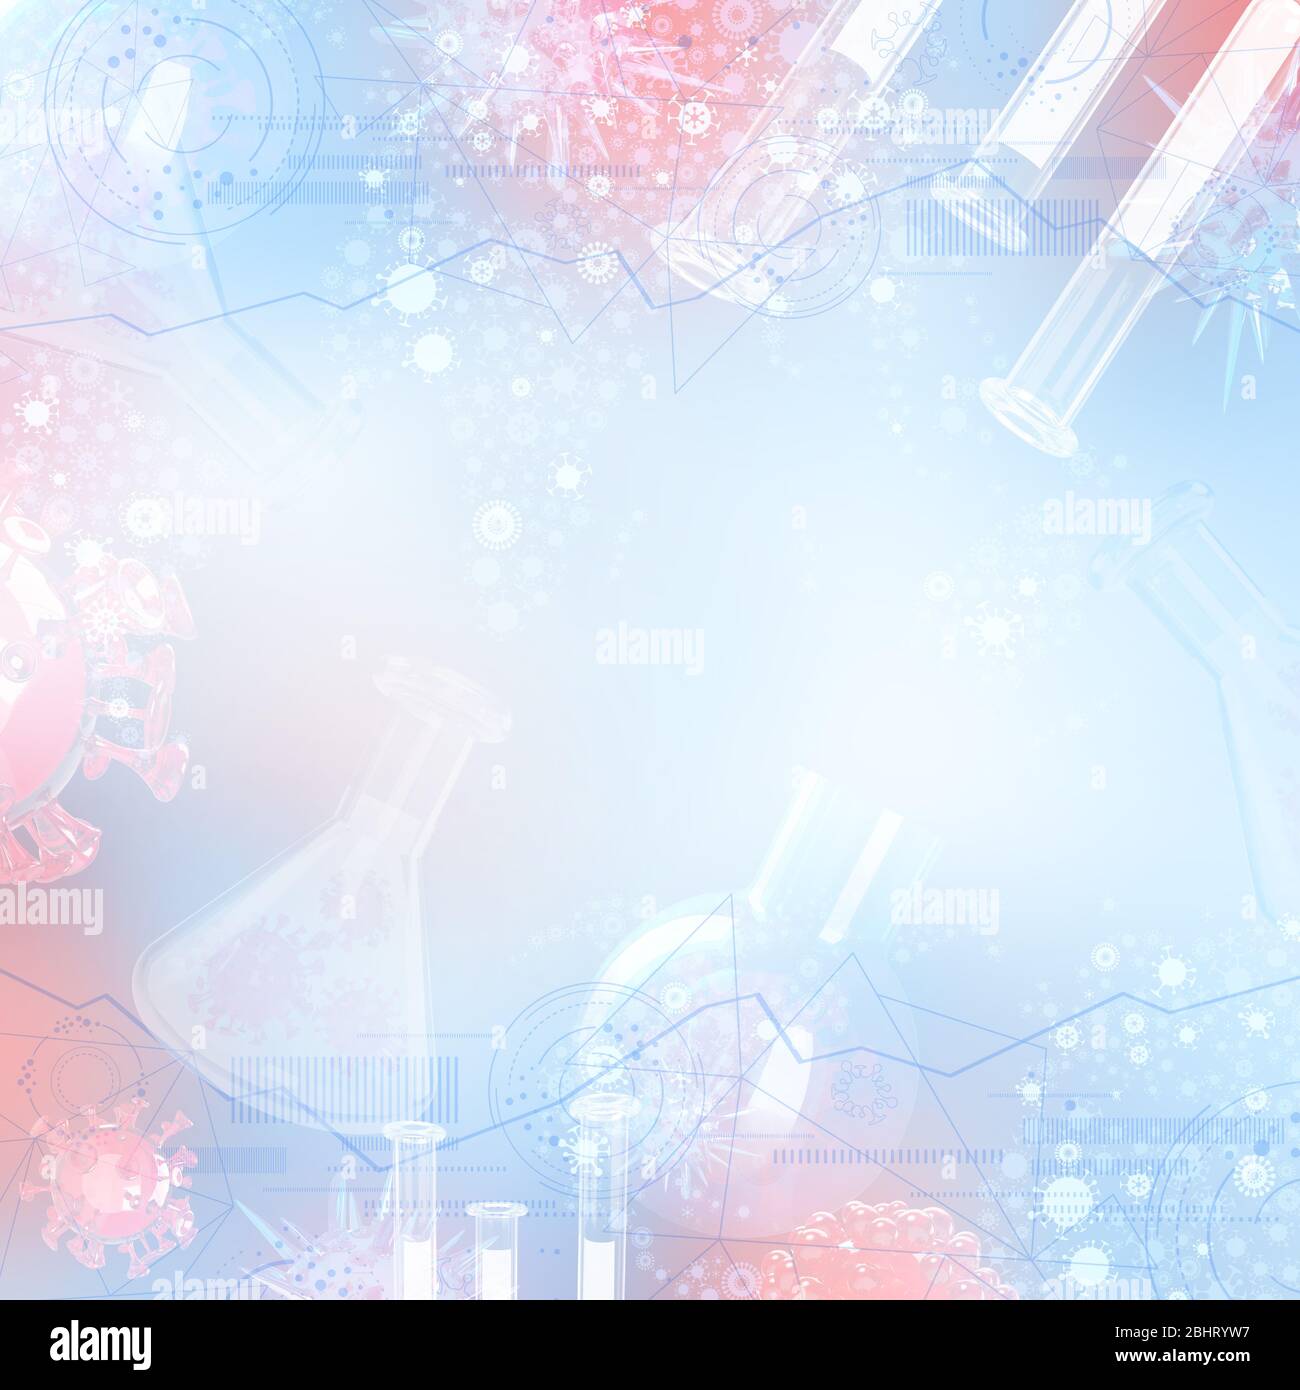 Antivirale ricerca di farmaci azzurro astratto illustrazione 3d Foto Stock